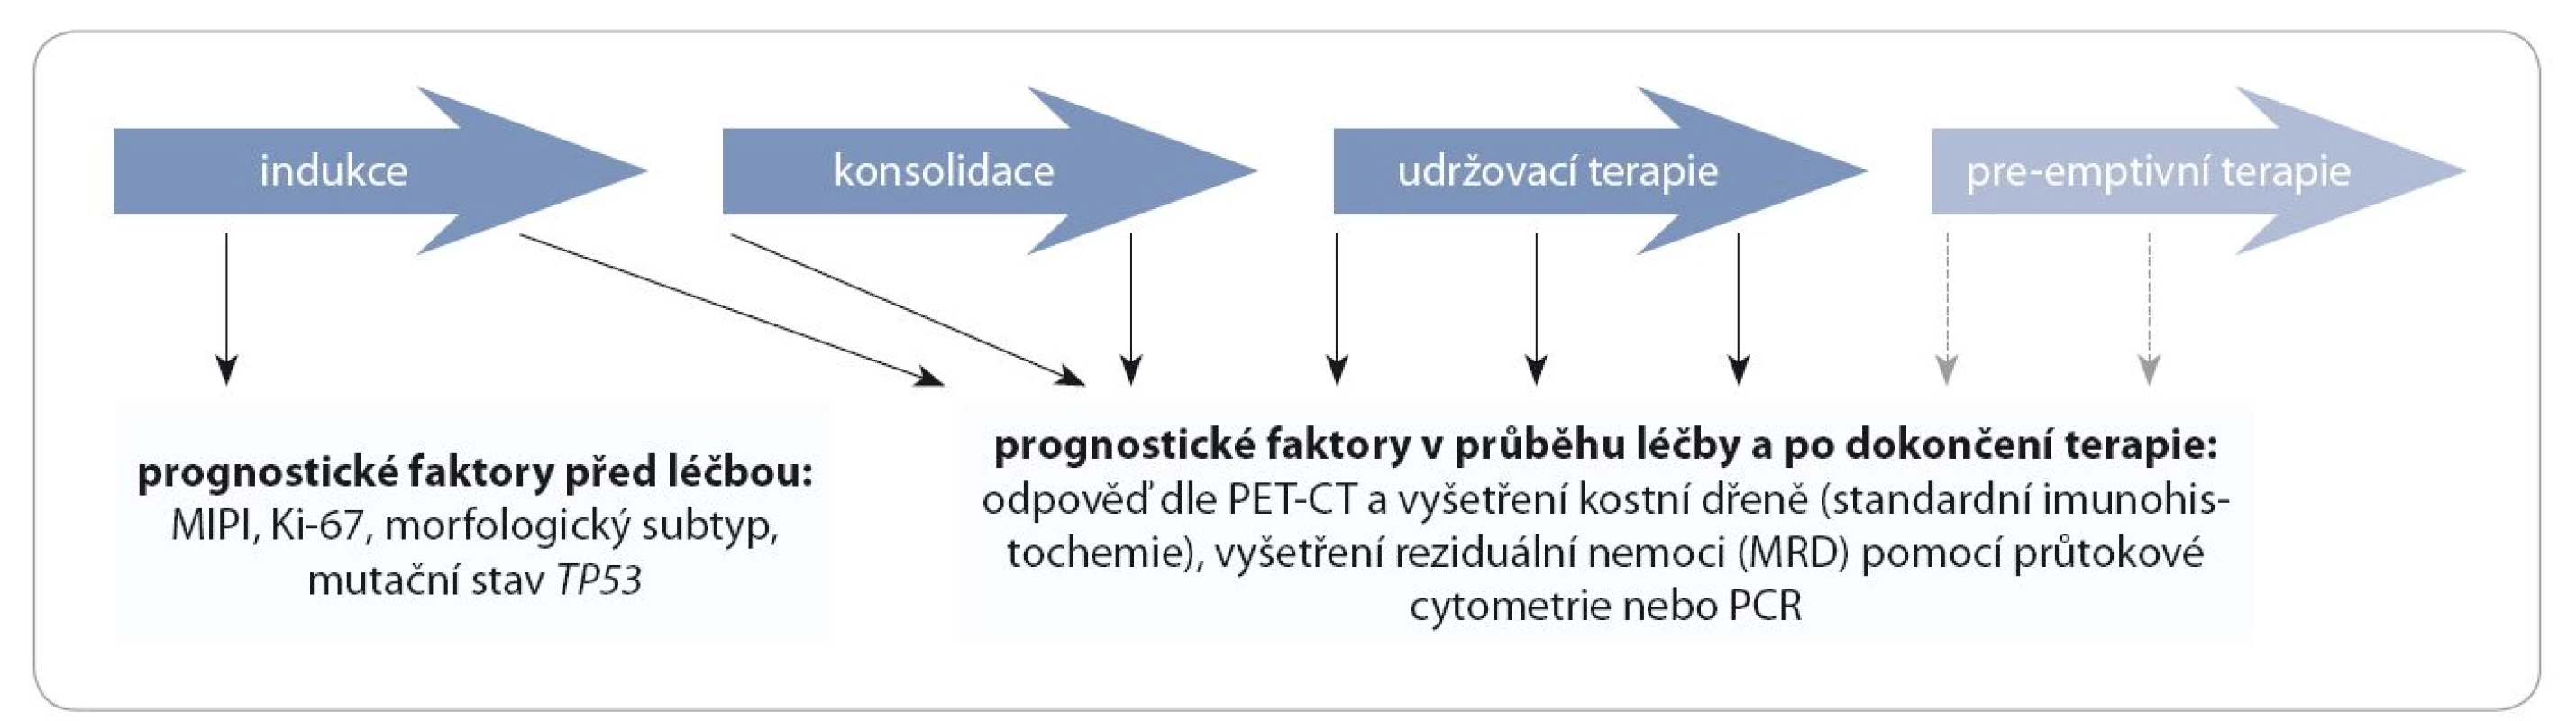 Prognostické faktory u pacientů s MCL před léčbou, v průběhu léčby a po jejím dokončení.